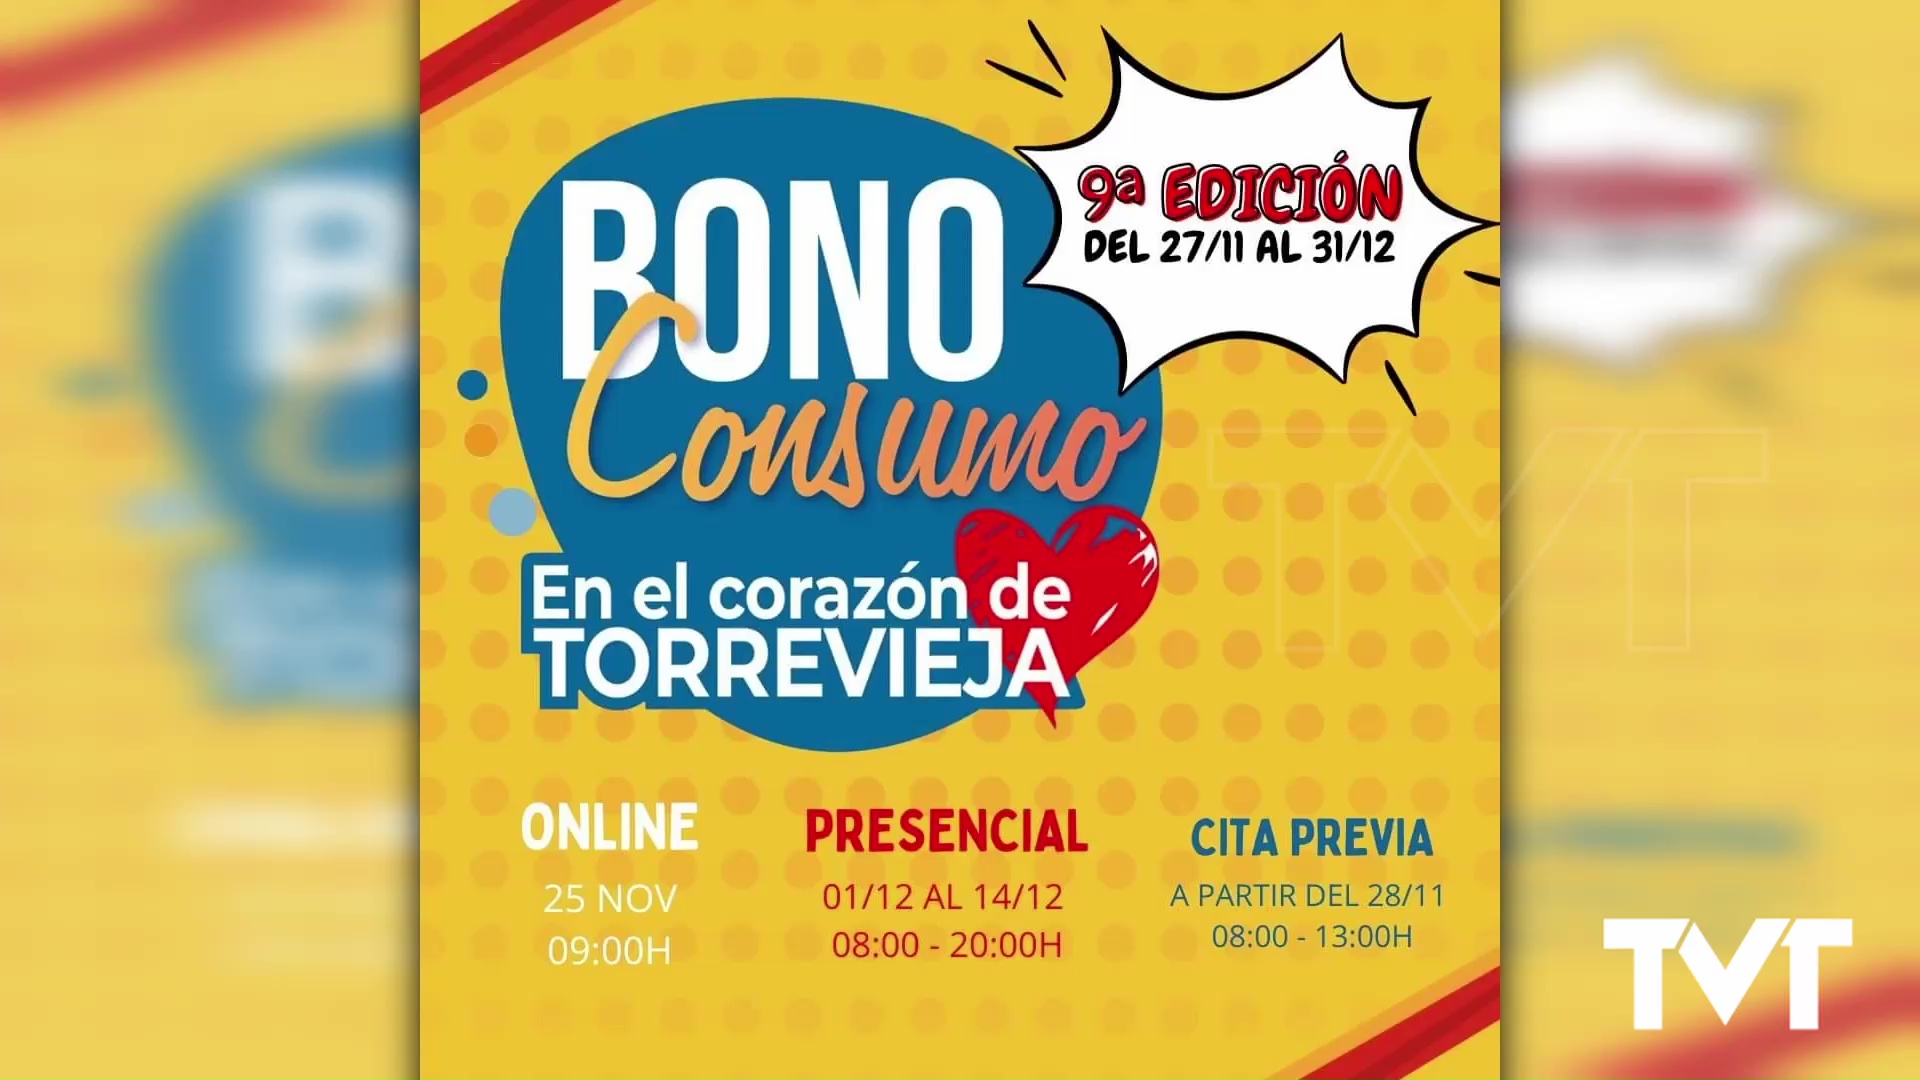 Imagen de La venta online del Bonoconsumo 9.0 empieza este sábado a las 9:00 horas